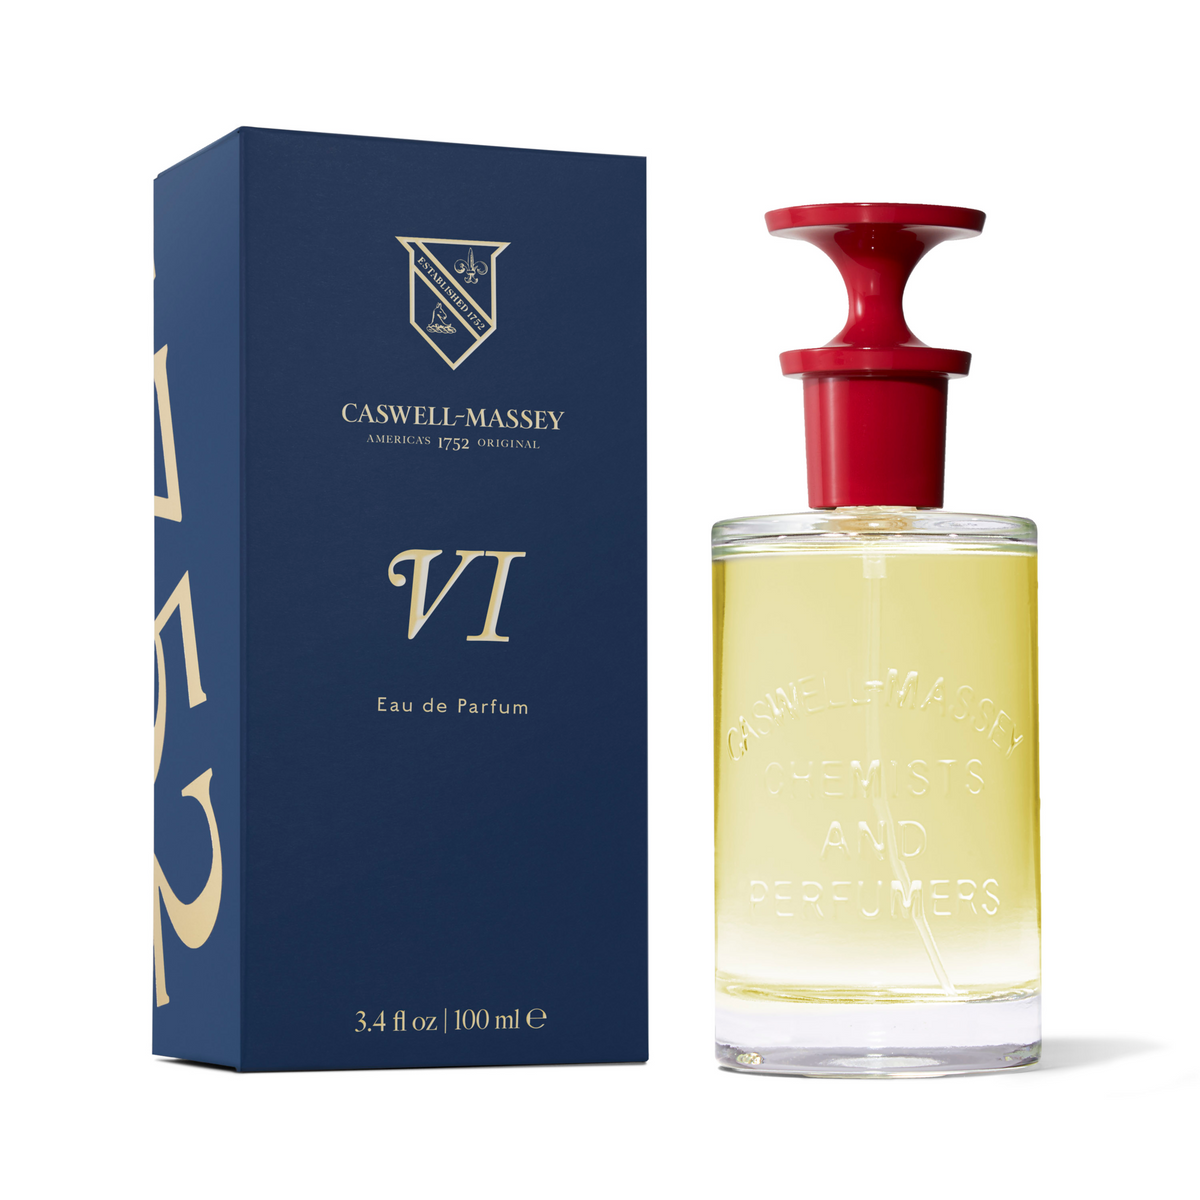 Primary Image of Number Six Eau de Parfum